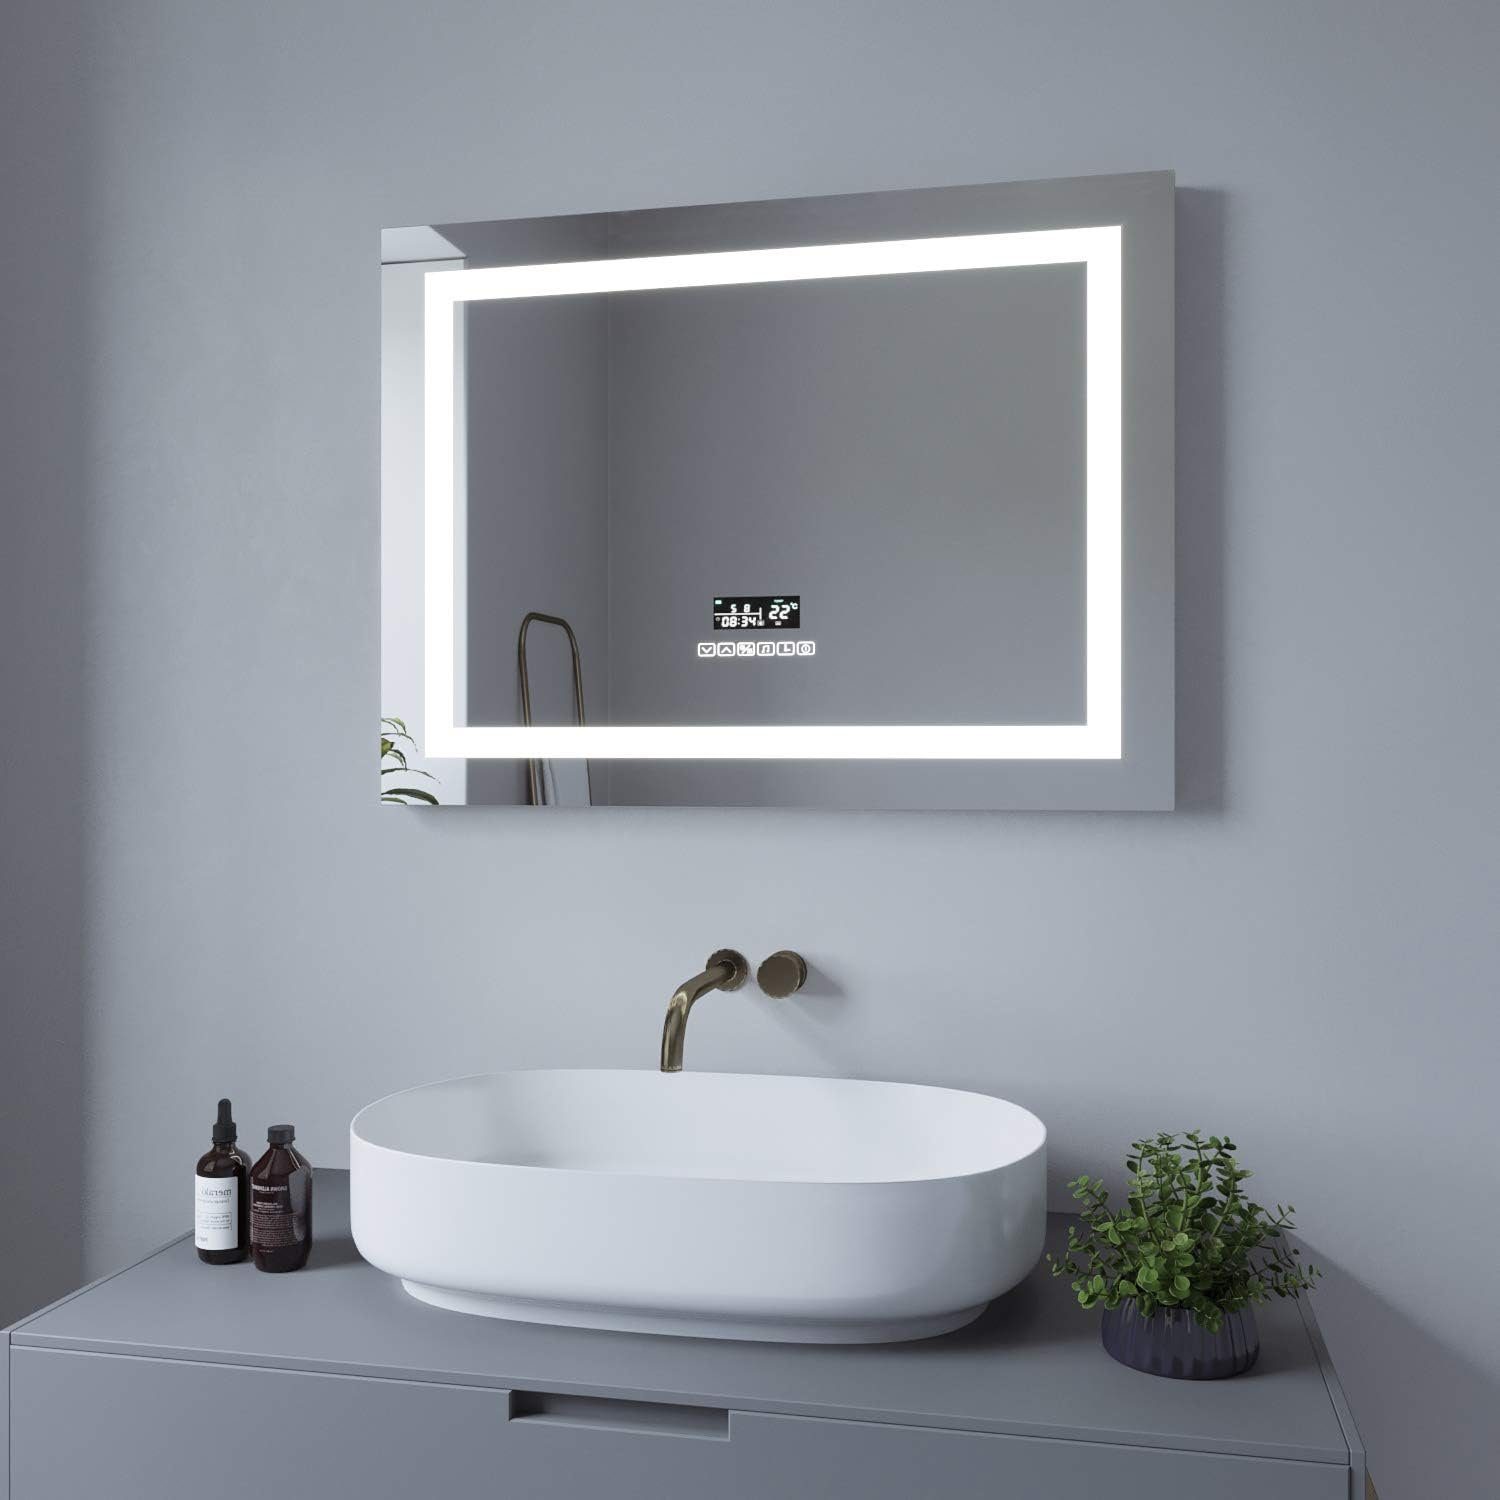 AQUALAVOS Badspiegel LED Badspiegel 80x60 cm mit Beleuchtung Bluetooth Lautsprecher Dimmbar, Badezimmerspiegel 6400K Kaltweiß & 4500K Neutralweiß & 3000K Warmweiß